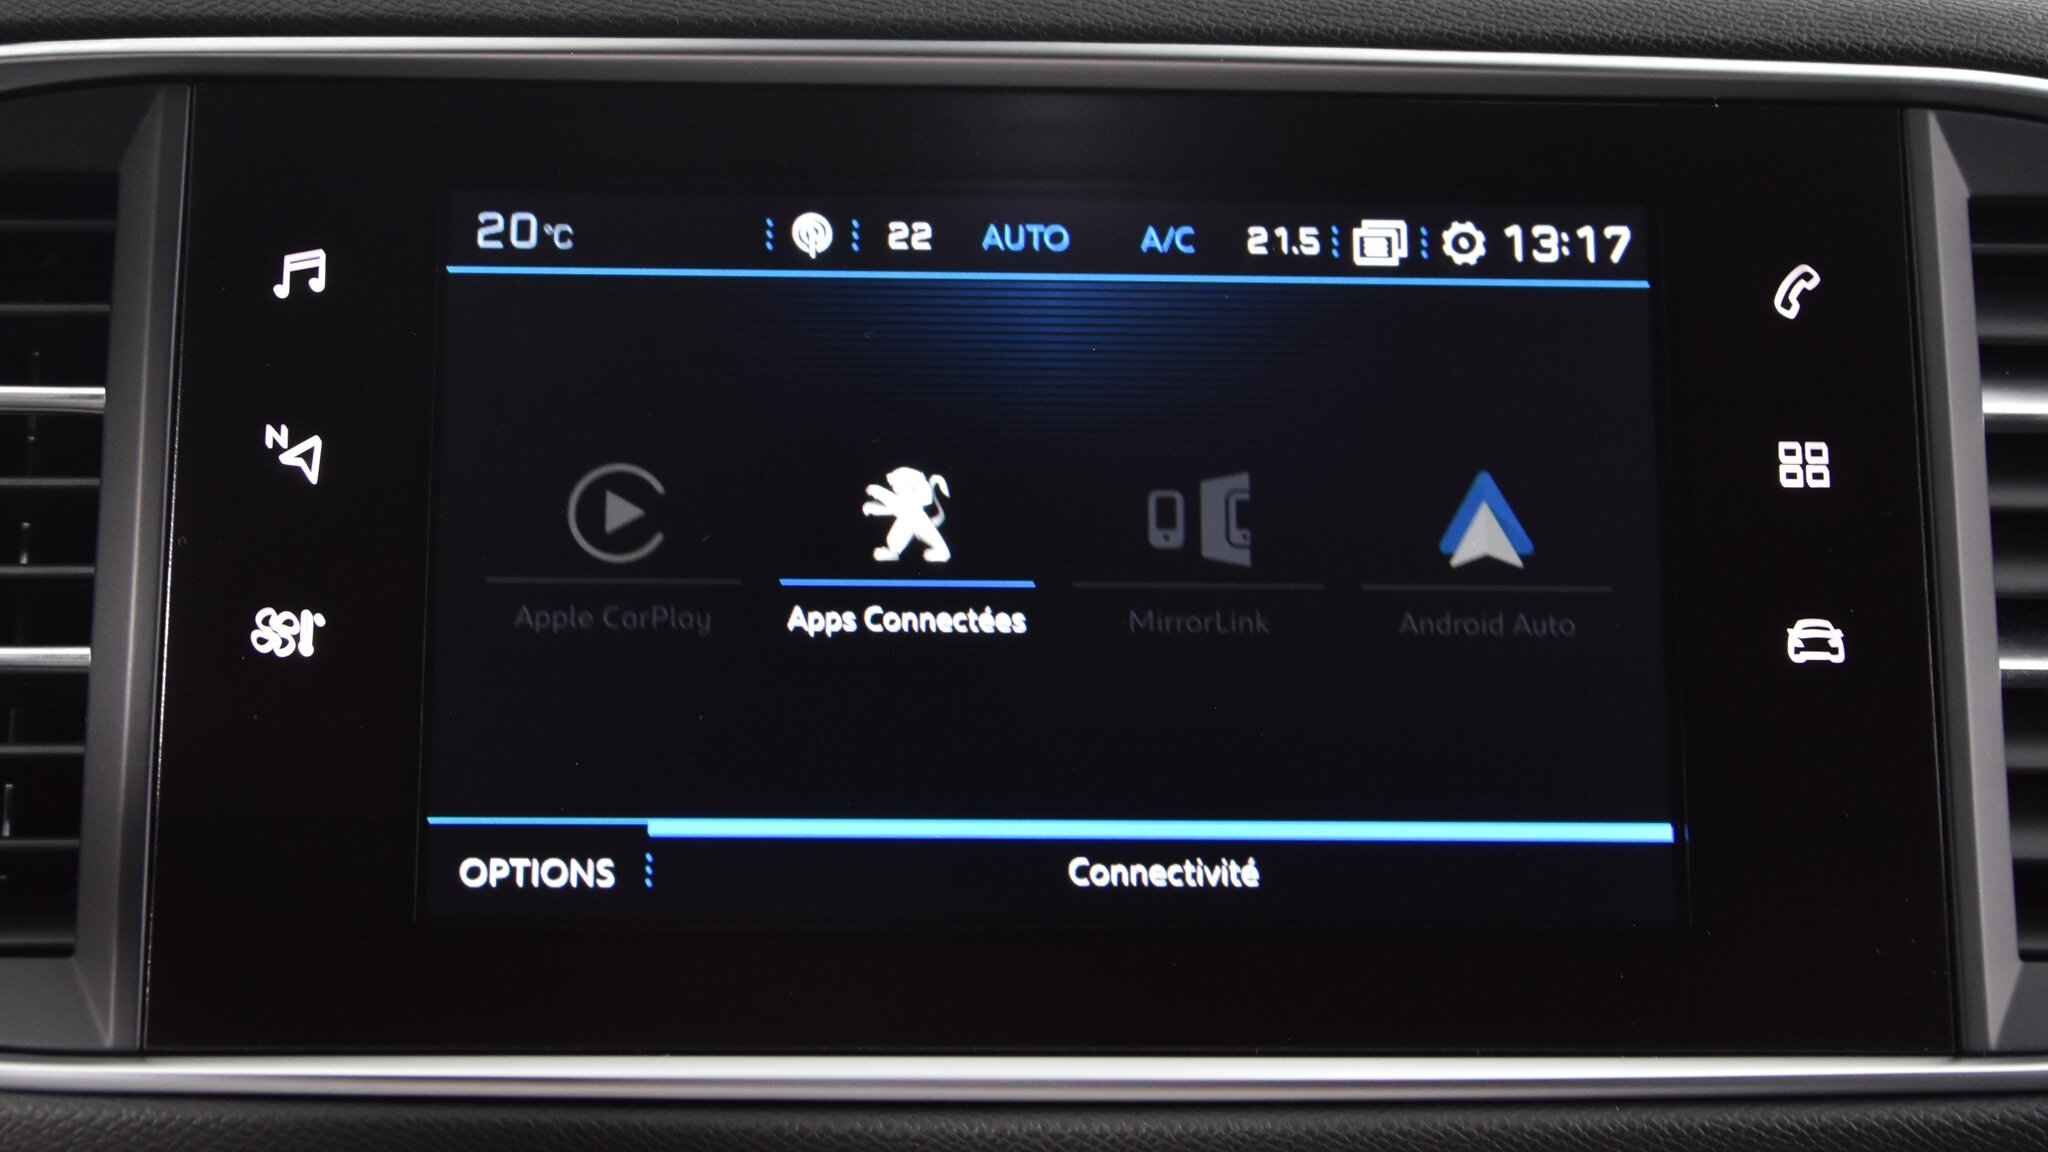 Mirror Screen - Apple CarPlay, NOUVELLE PEUGEOT 308, Découvrez la  nouvelle fonctionnalité Mirror Screen avec l'application CarPlay dans  la nouvelle Peugeot 308, By Peugeot Cambrai